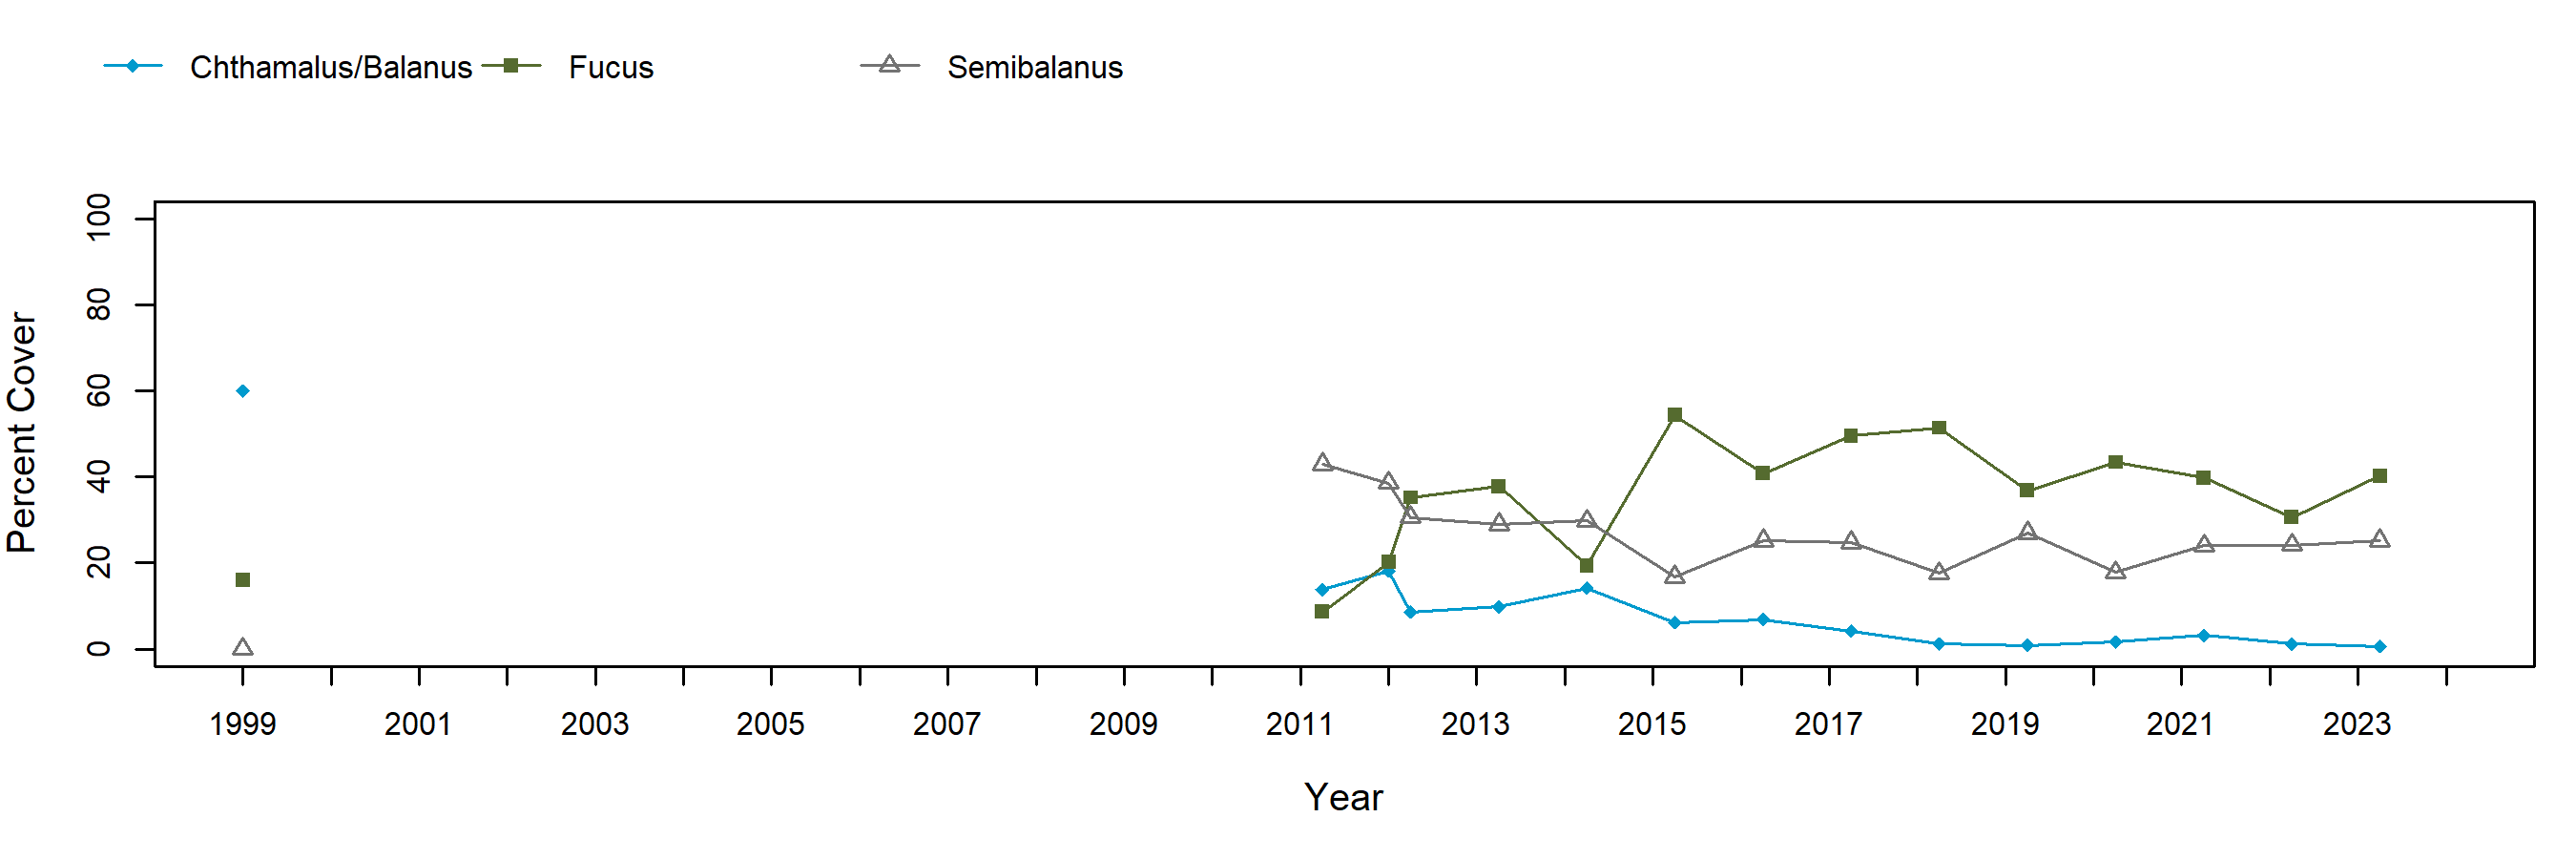 Sage Rock semibalanus trend plot